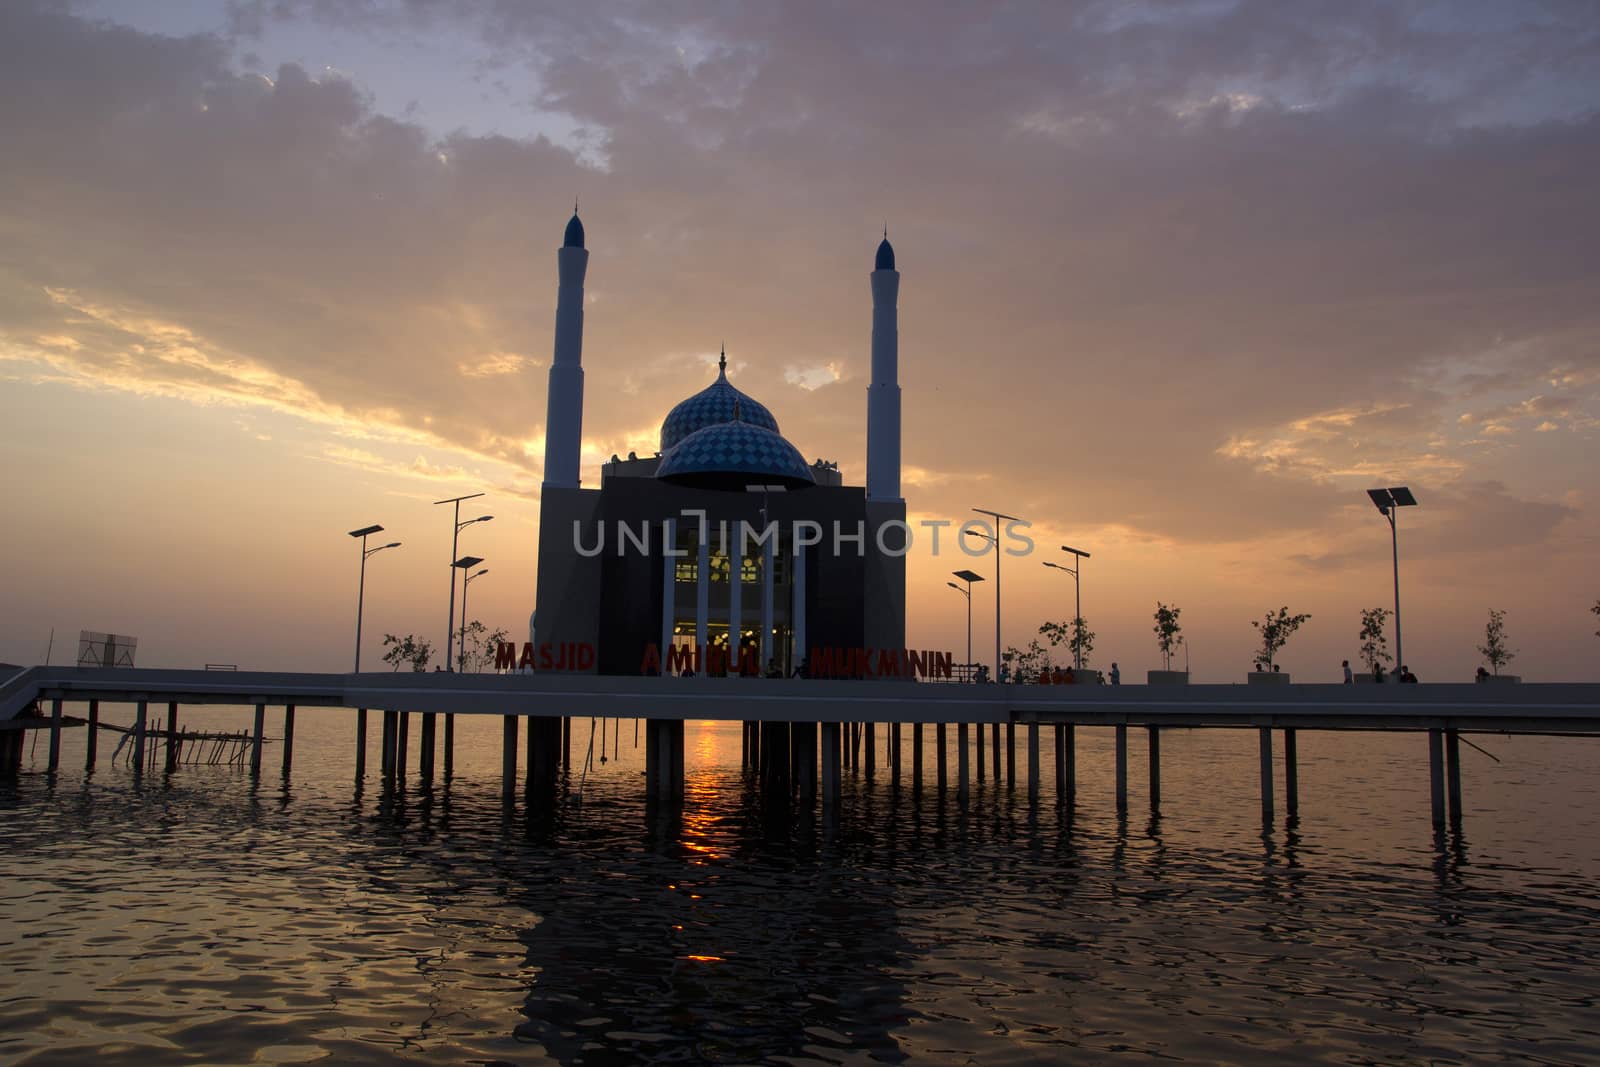 Amirul mukmini mosque by antonihalim